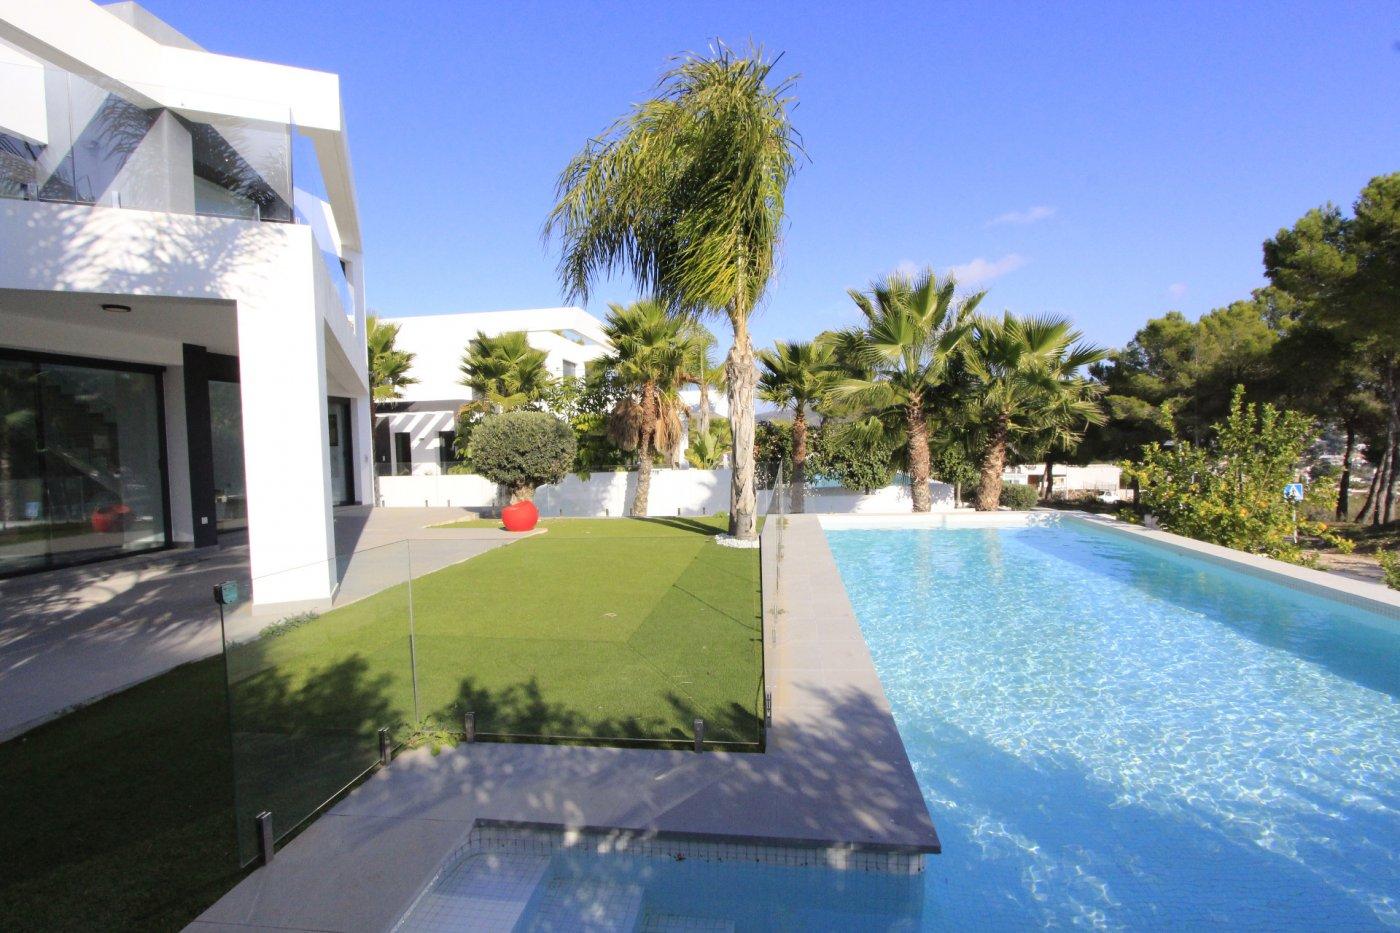 Villa moderna ubicada en zona tranquila, cerca del centro y de las playas de Moraira